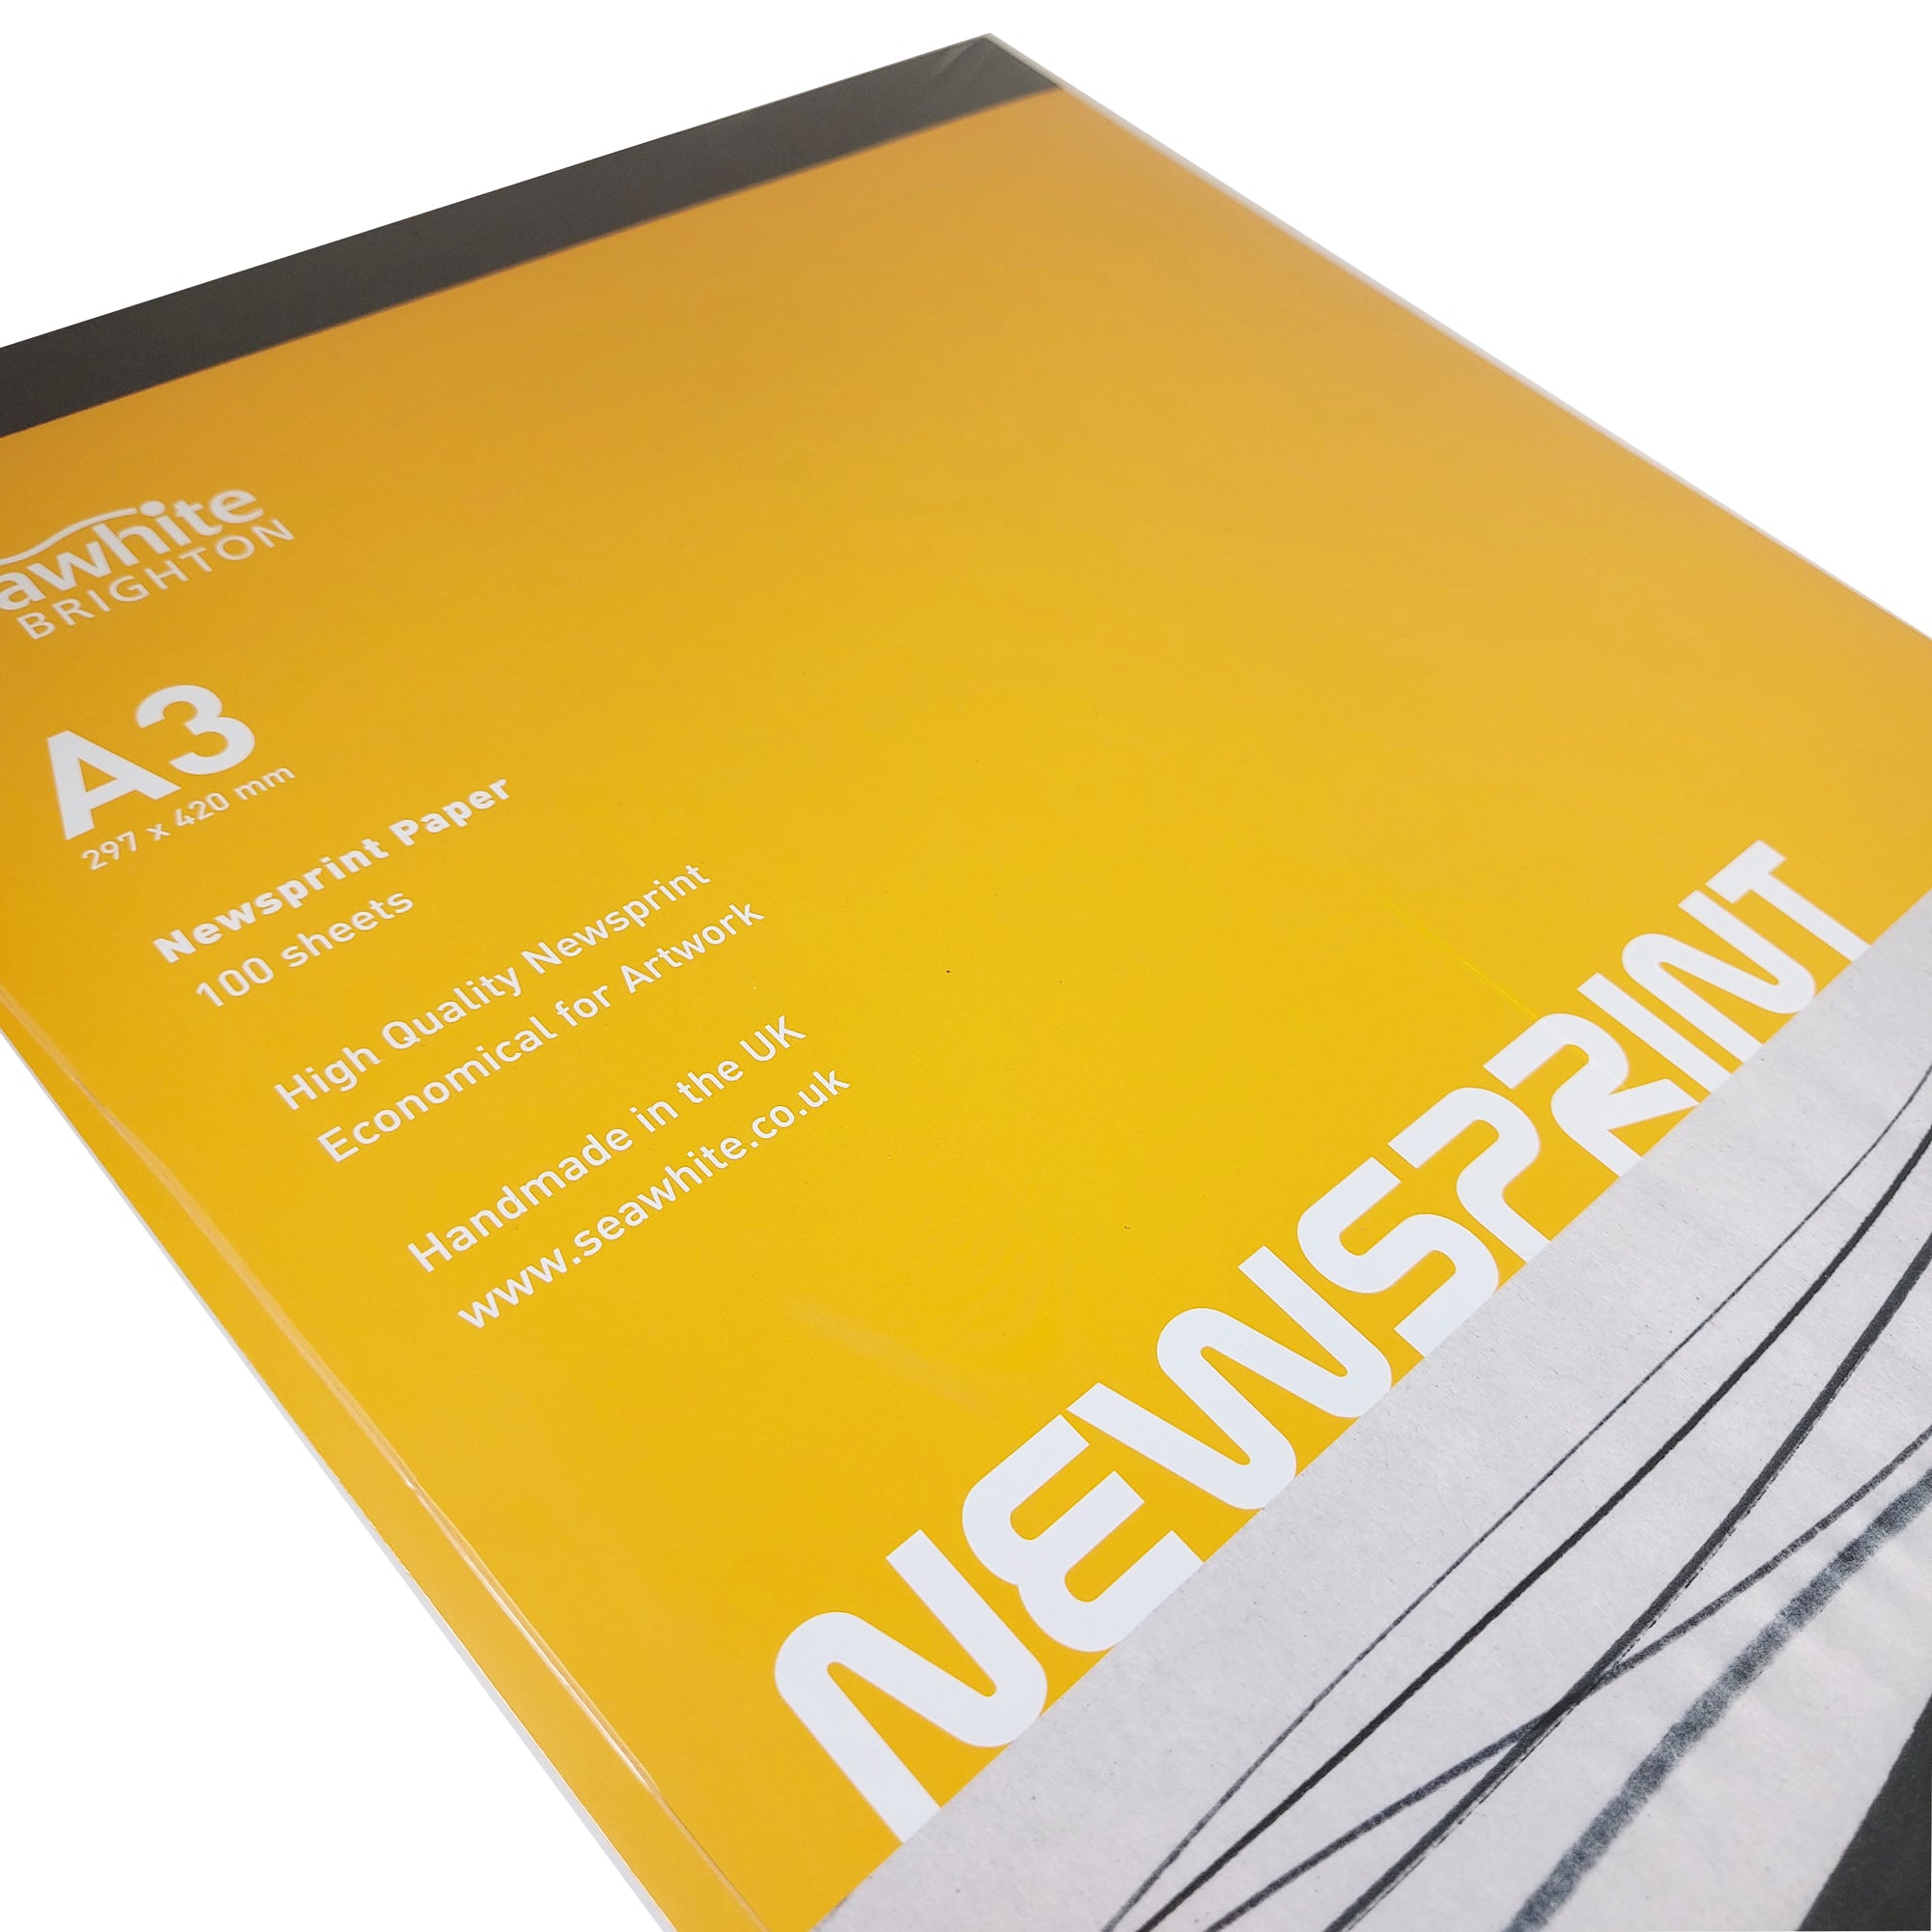 Newsprint